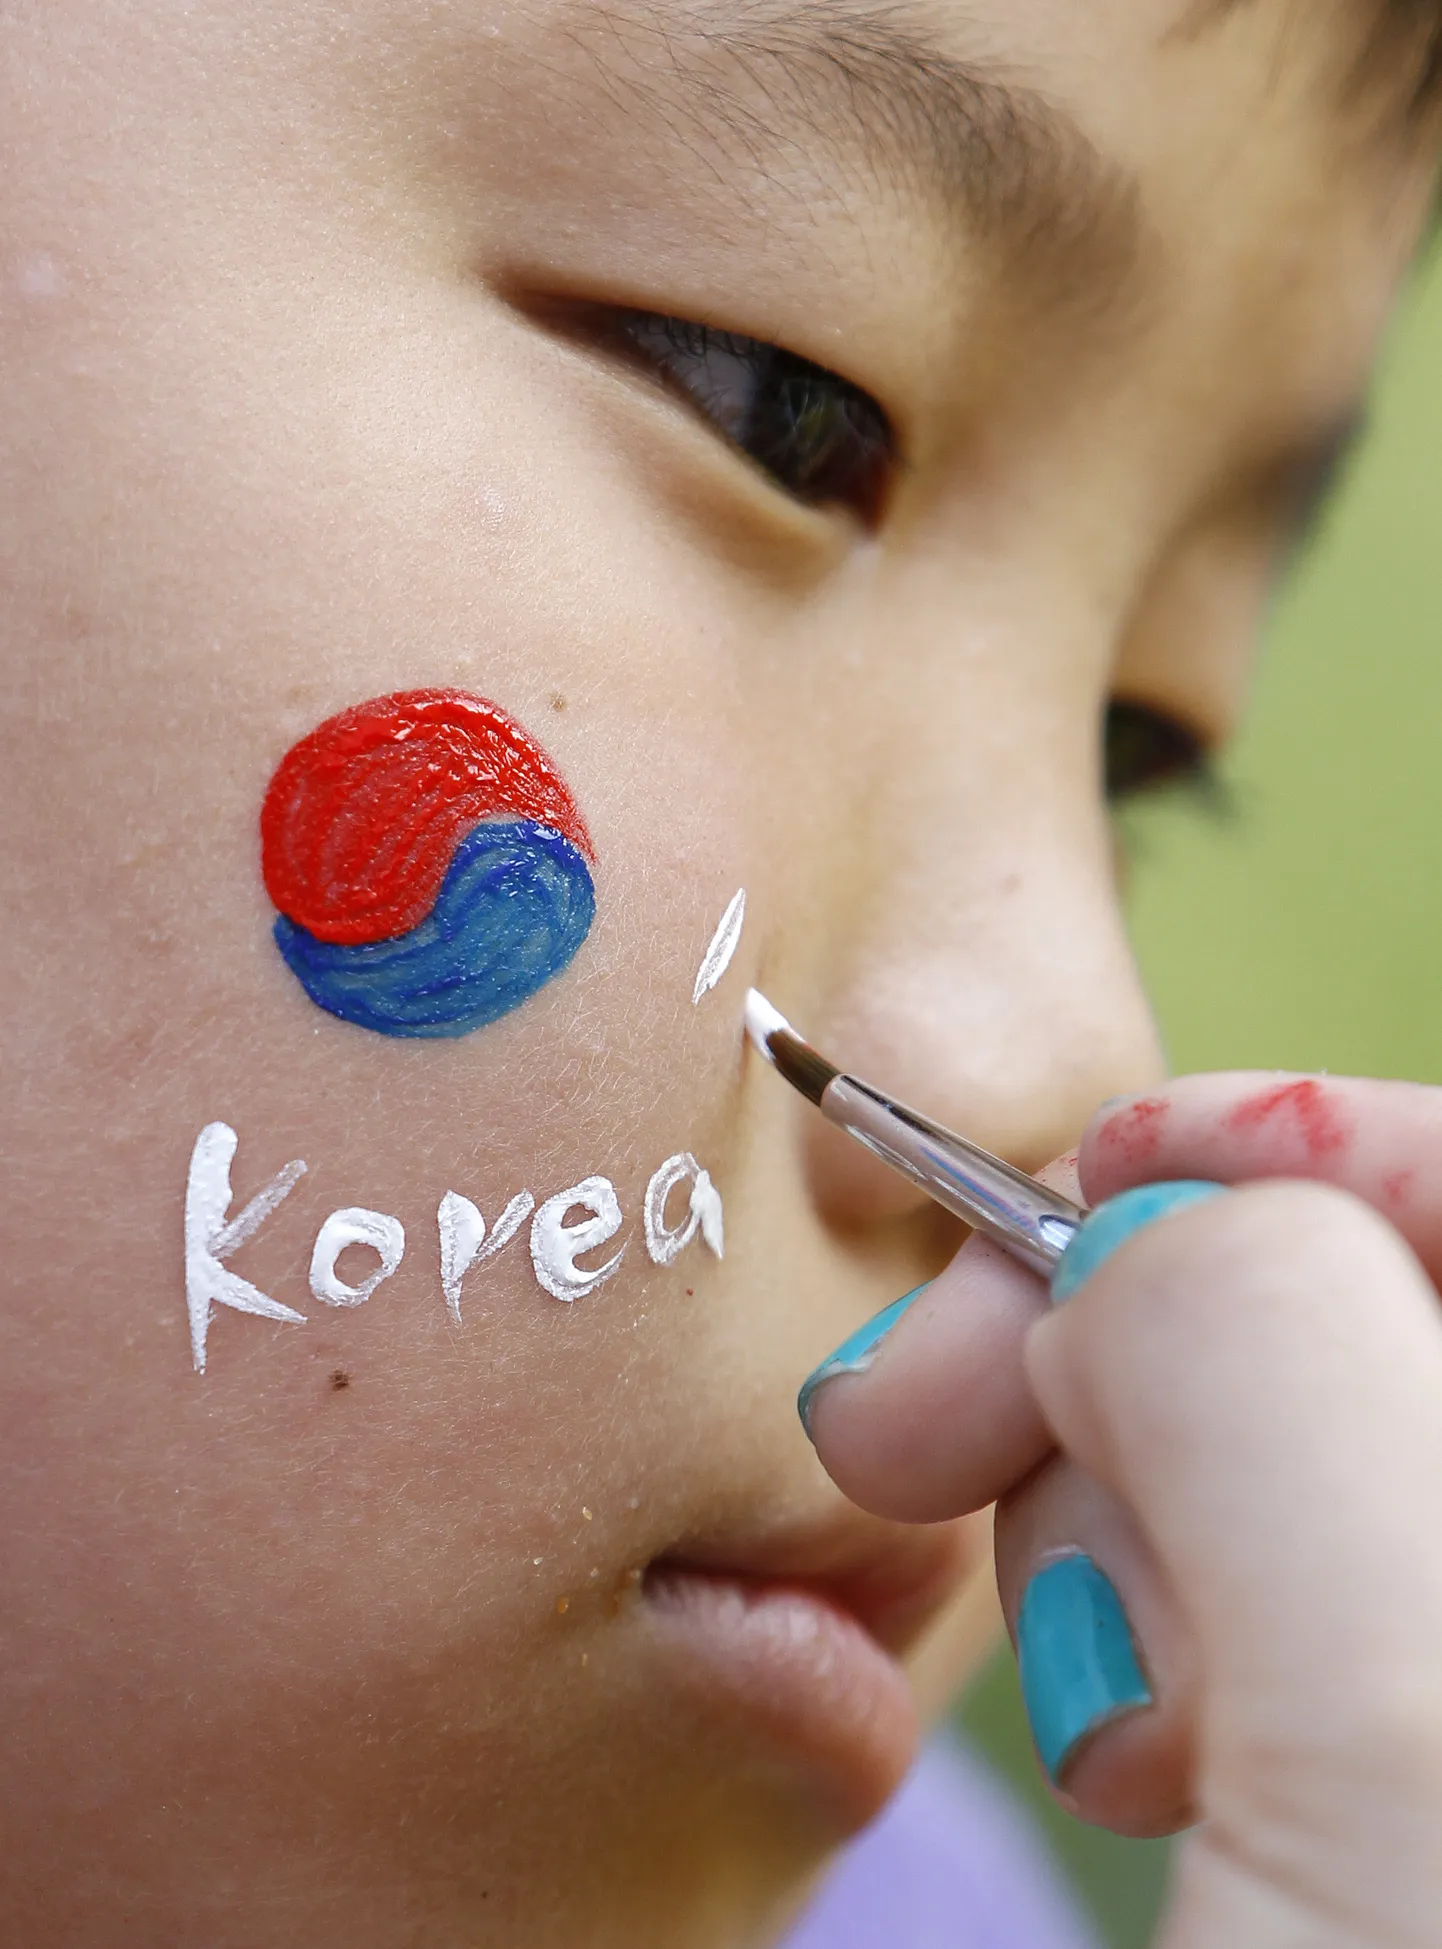 Lõuna-Korea on valmis avatseremoonial oma lipu lehvitamisest loobuma